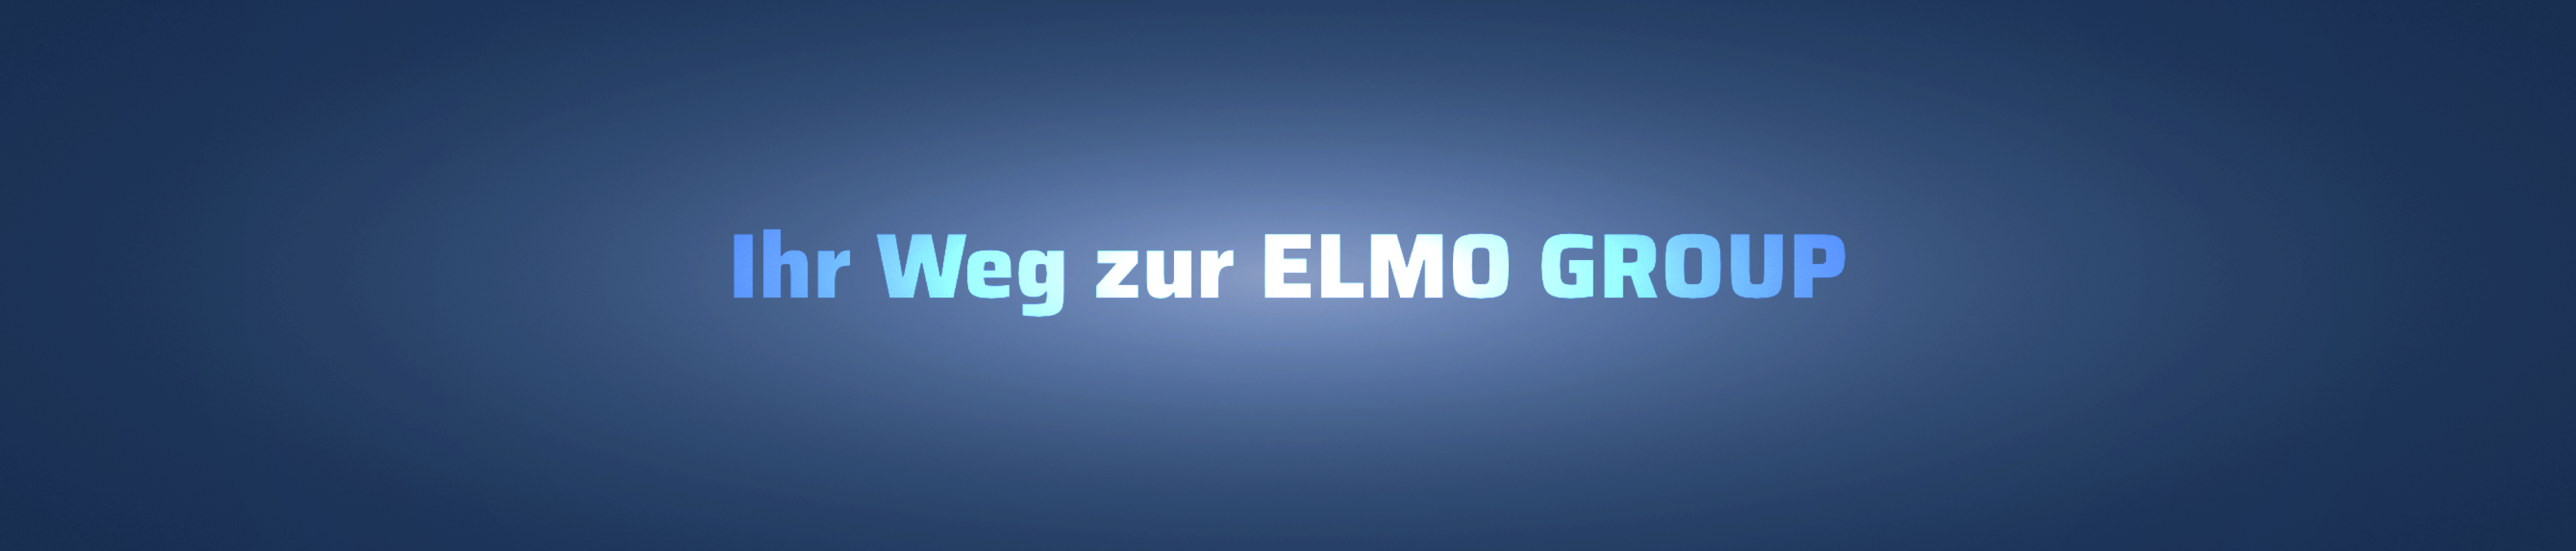 Worte Ihr Weg zur Elmo Group in Website-Font Saira auf Blau-Verlauf mit Transparenz, dahinter Skyline Hong Kong Vectorgrafik als Corporate Identity Element Elmo Group erkennbar